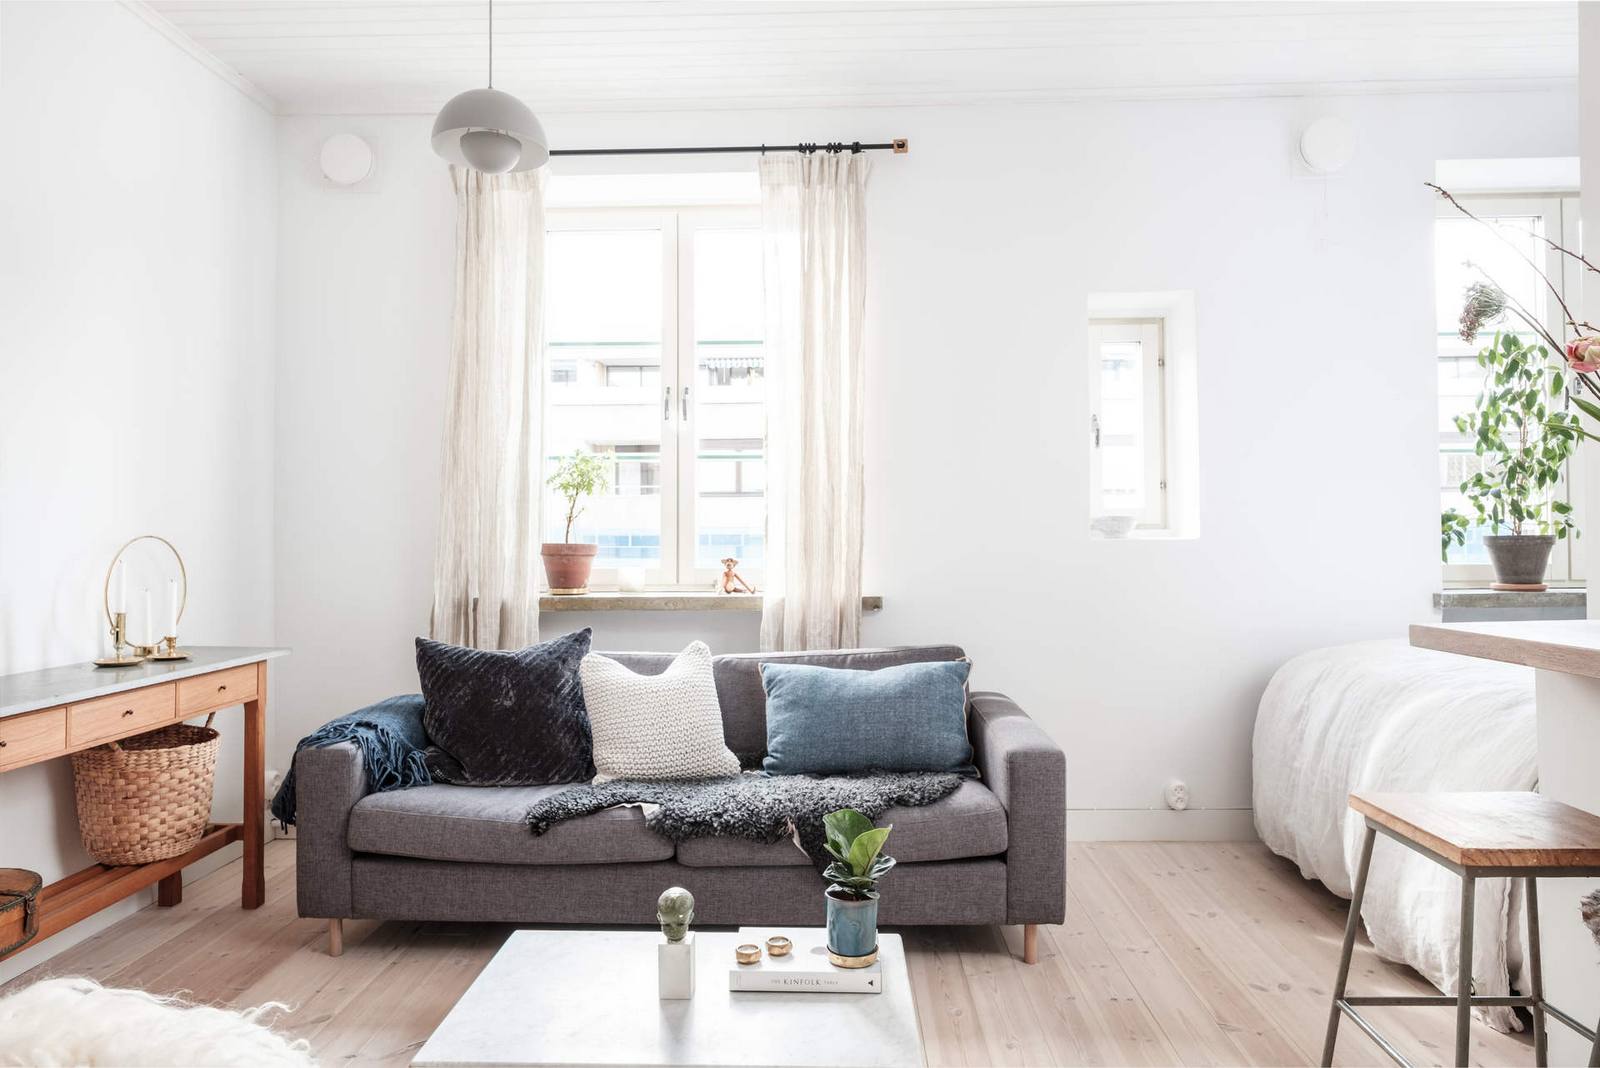 Phòng khách xinh xắn với chiếc ghế sofa màu xám, nhấn nhá bằng những chiếc gối tựa lưng êm ái. Chiếc bàn nước màu trắng thiết kế đơn giản, gọn nhẹ, mang phong cách Scandinavian của xứ Bắc Âu.